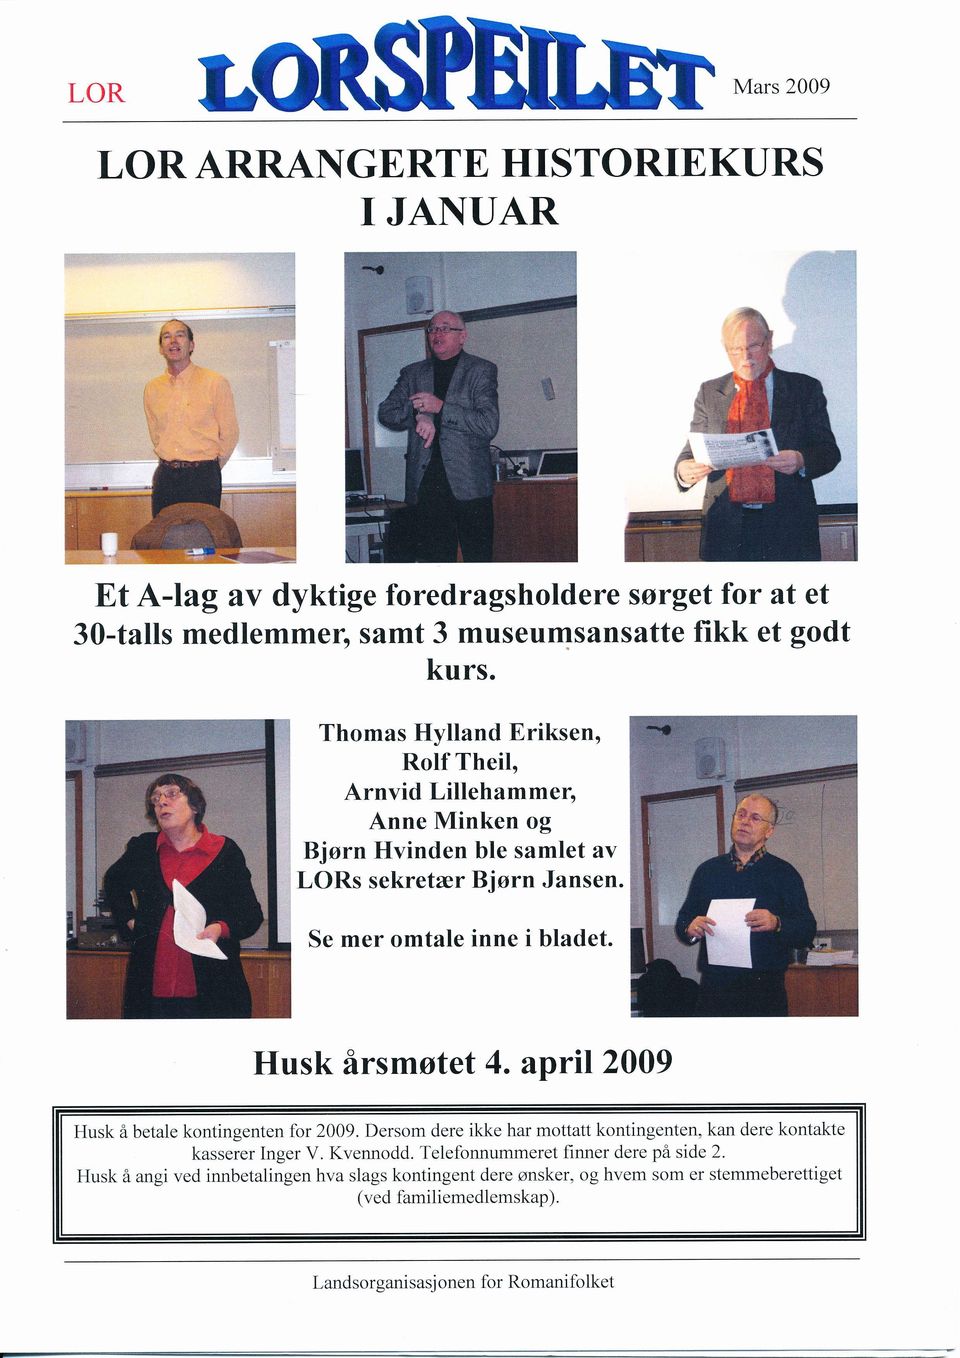 Thomas Hylland Eriksen, Rolf Theil, Arnvid Lillehammer, Anne Minken og Bjørn Hvinden ble samlet av LORs sekretær Bjørn Jansen. Se mer omtale inne i bladet.